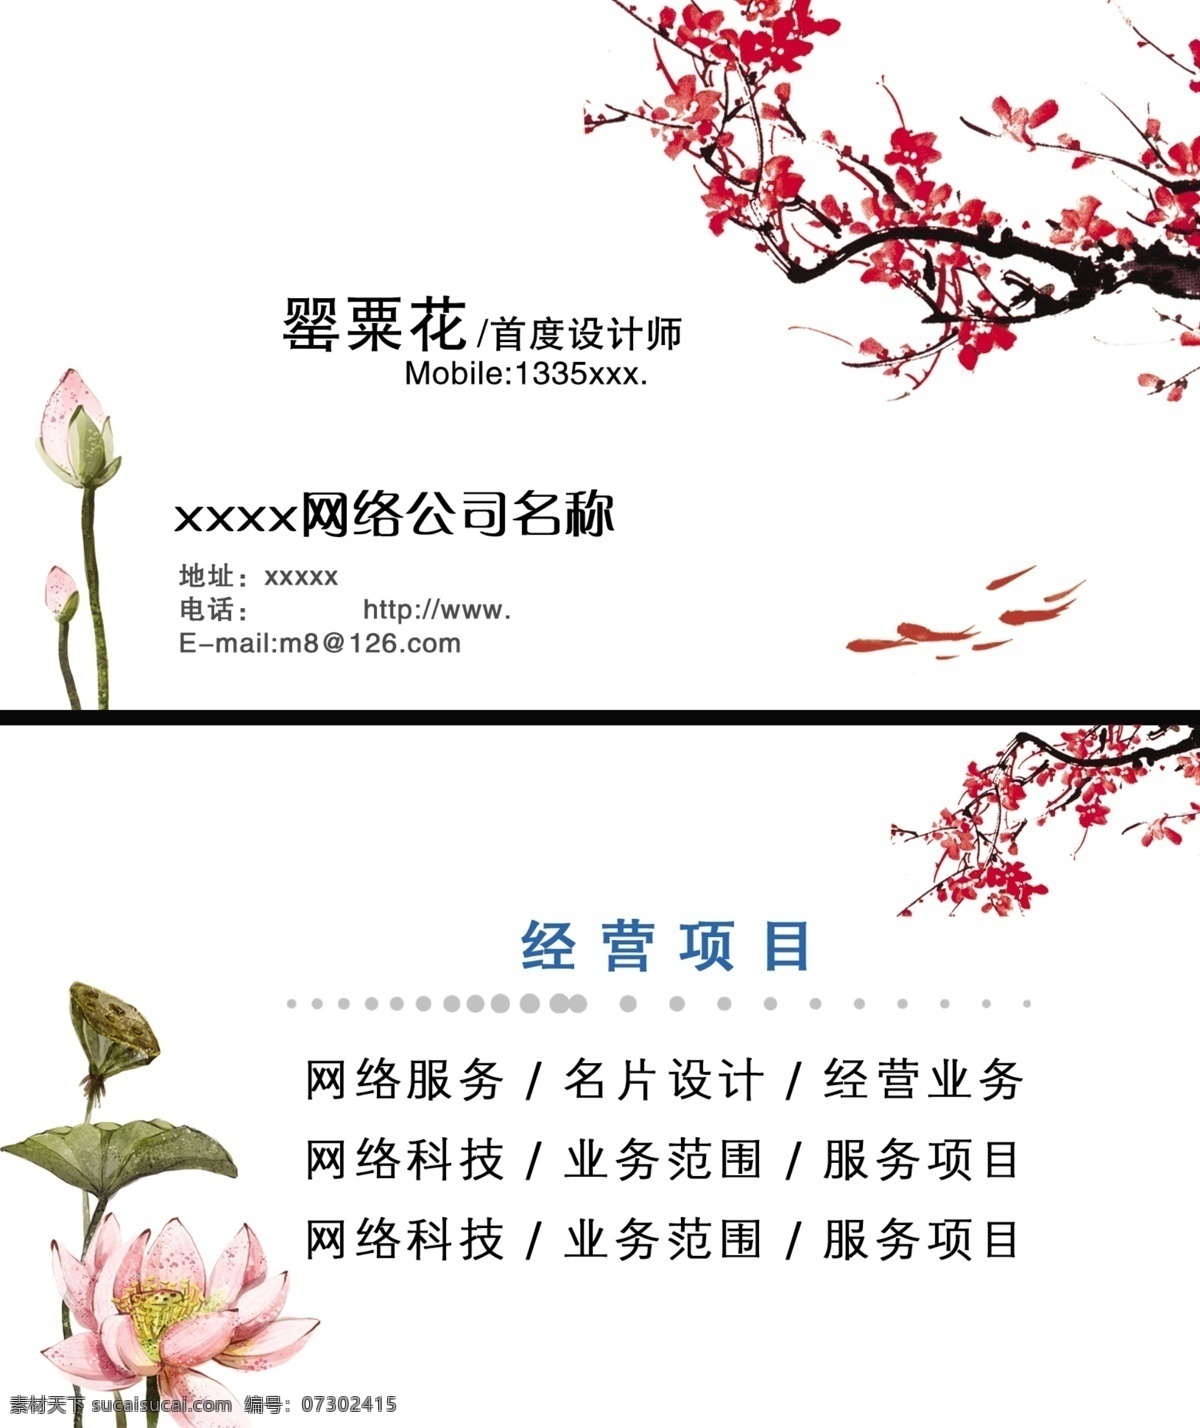 名片素材 模版下载 中国风 个性名片模板 荷花素材 水墨金鱼 名片卡片 广告设计模板 源文件